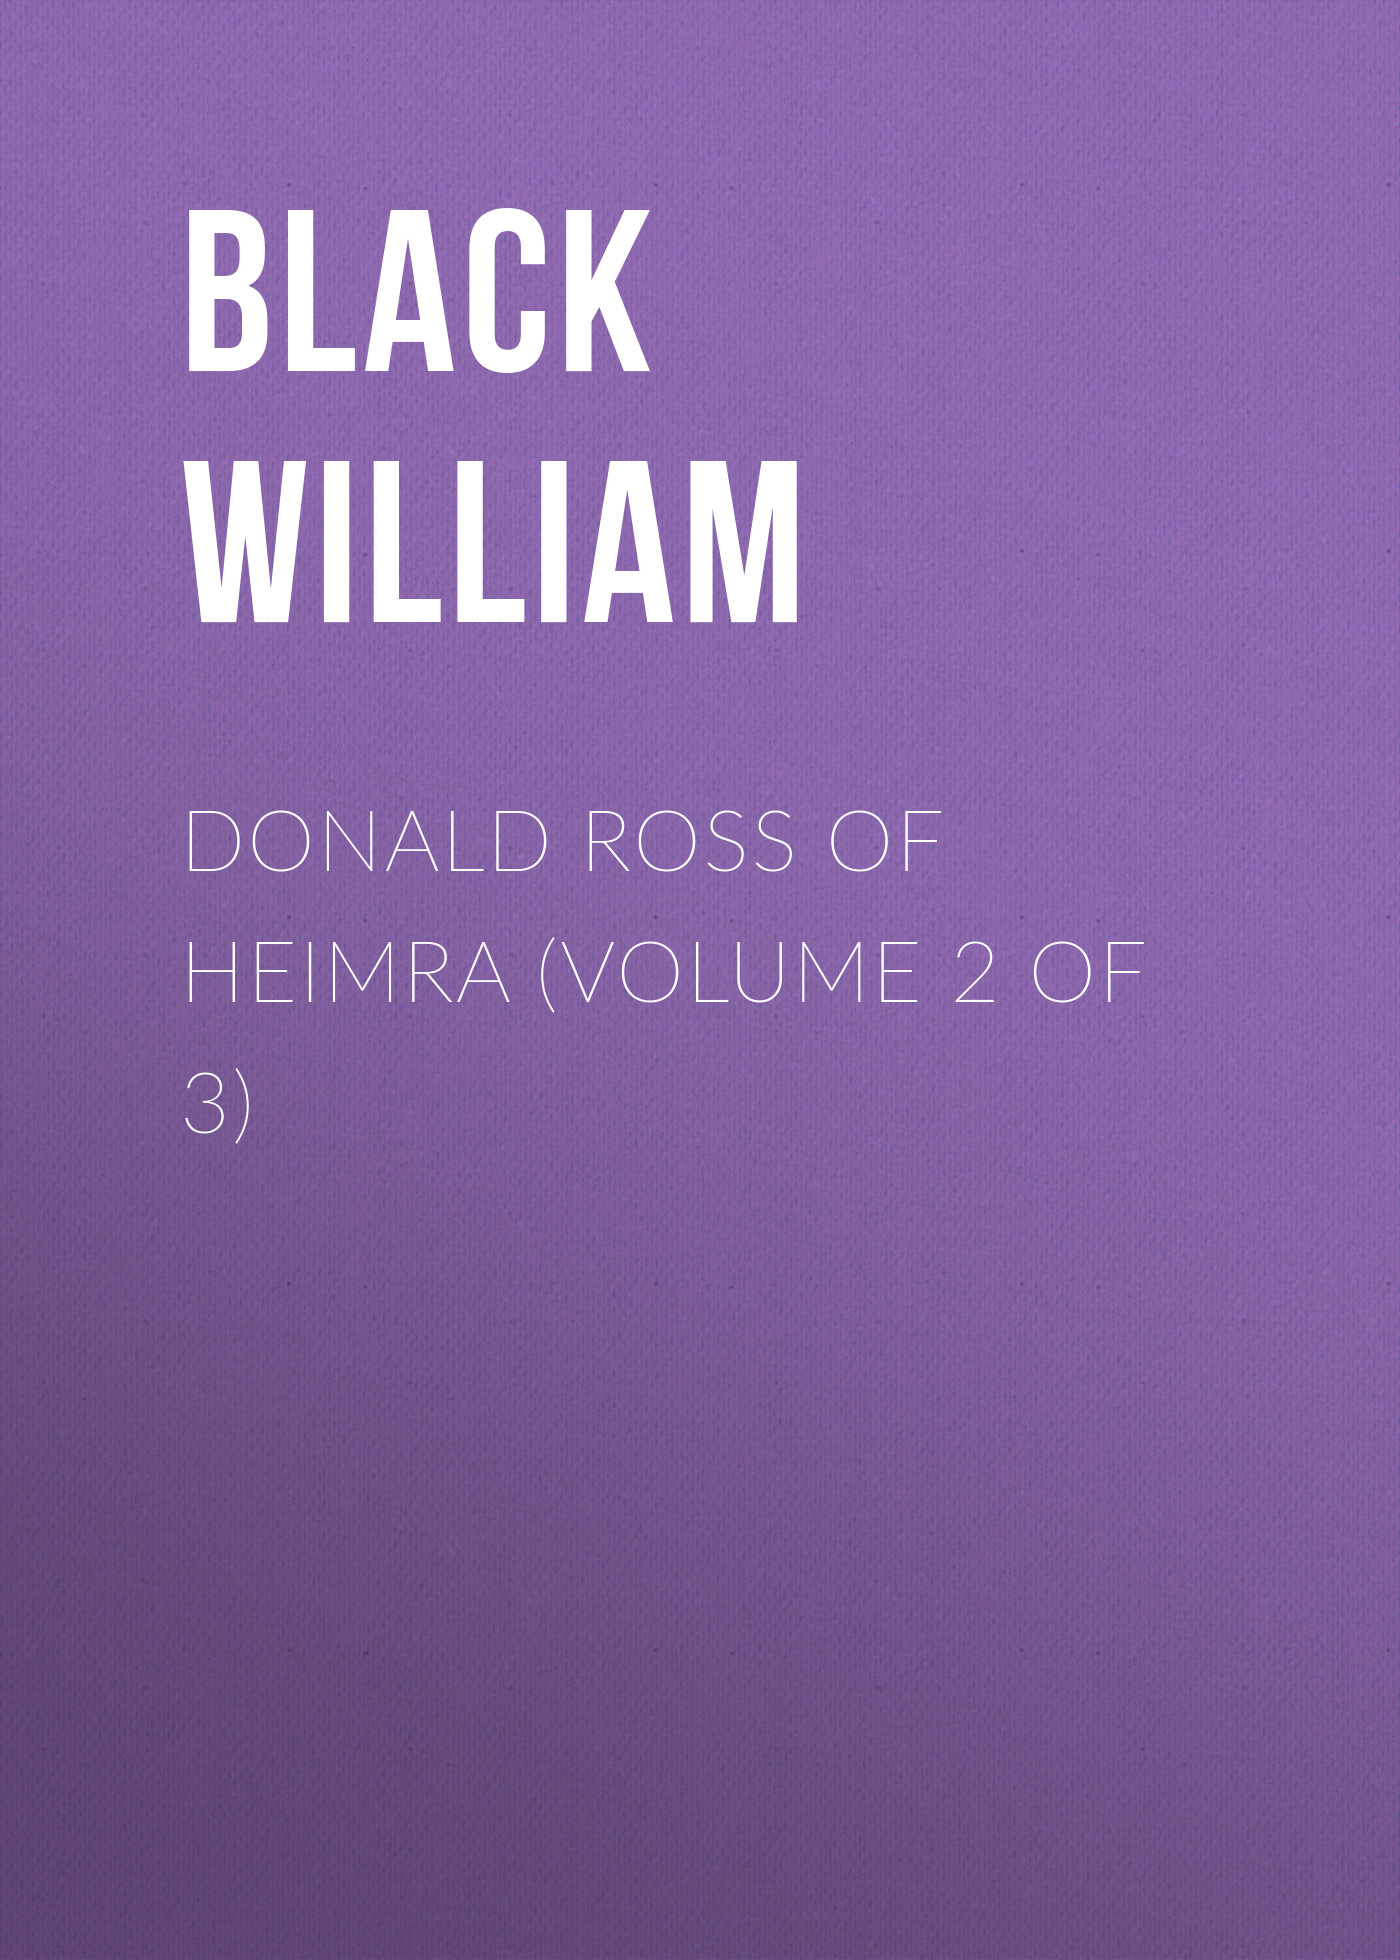 Книга Donald Ross of Heimra (Volume 2 of 3) из серии , созданная William Black, может относится к жанру Зарубежная старинная литература, Зарубежная классика. Стоимость электронной книги Donald Ross of Heimra (Volume 2 of 3) с идентификатором 24168876 составляет 0.90 руб.